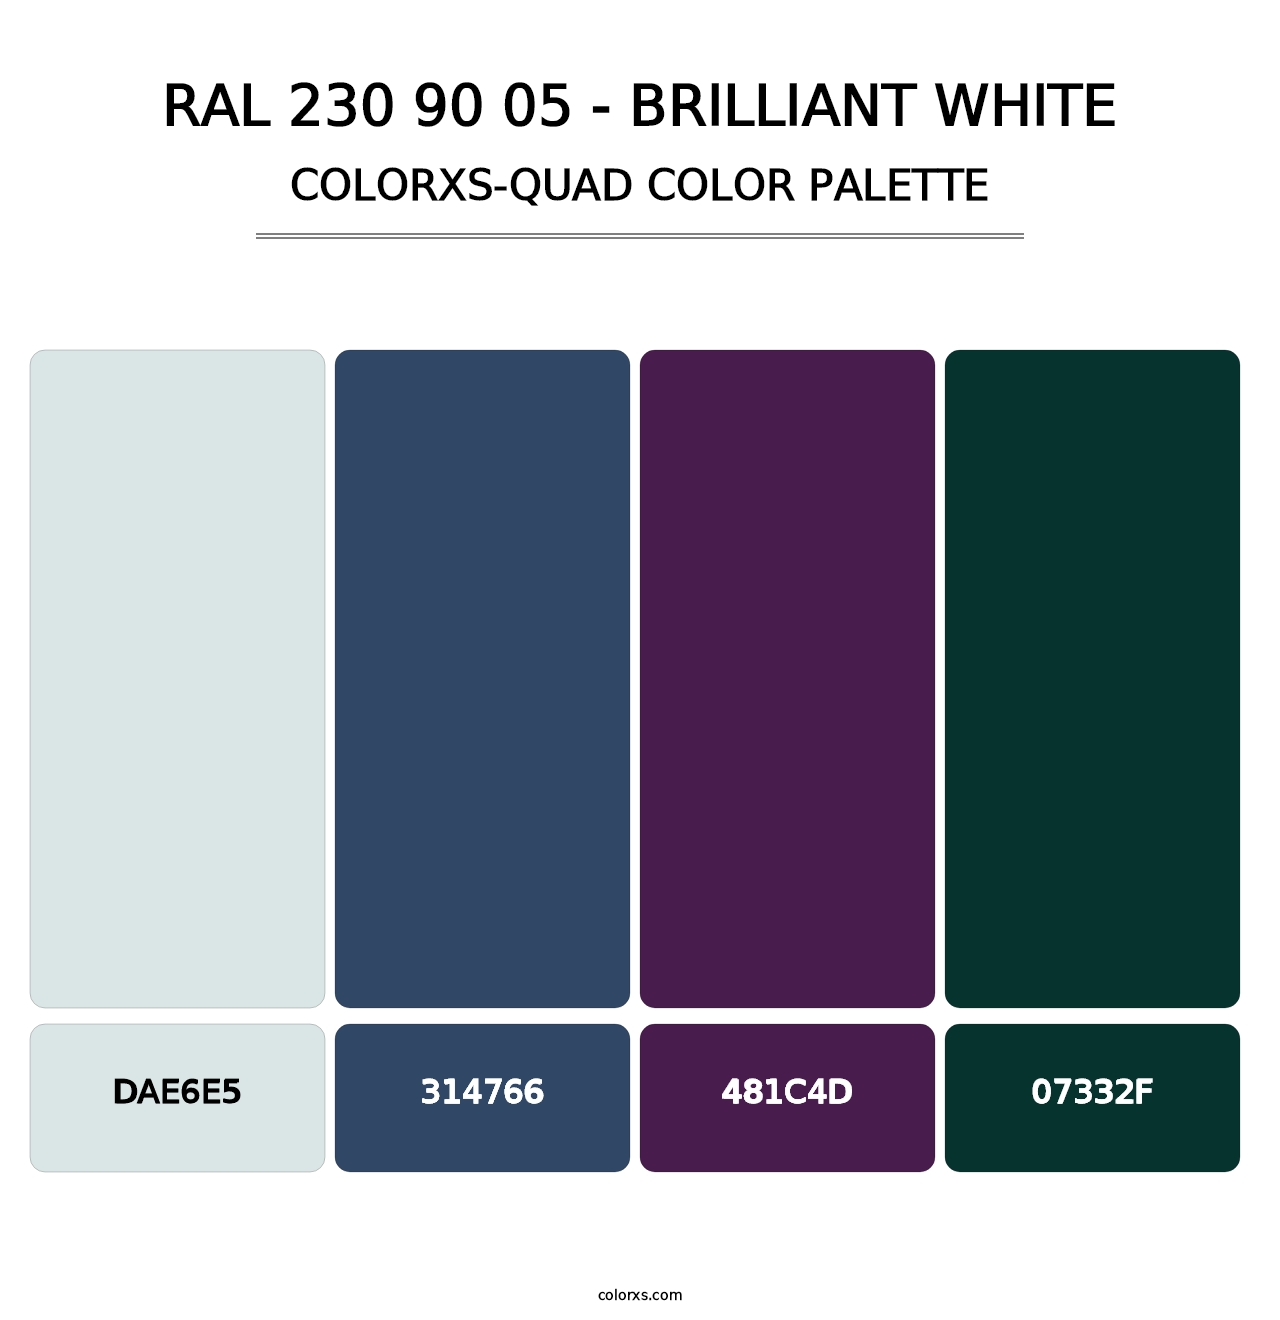 RAL 230 90 05 - Brilliant White - Colorxs Quad Palette